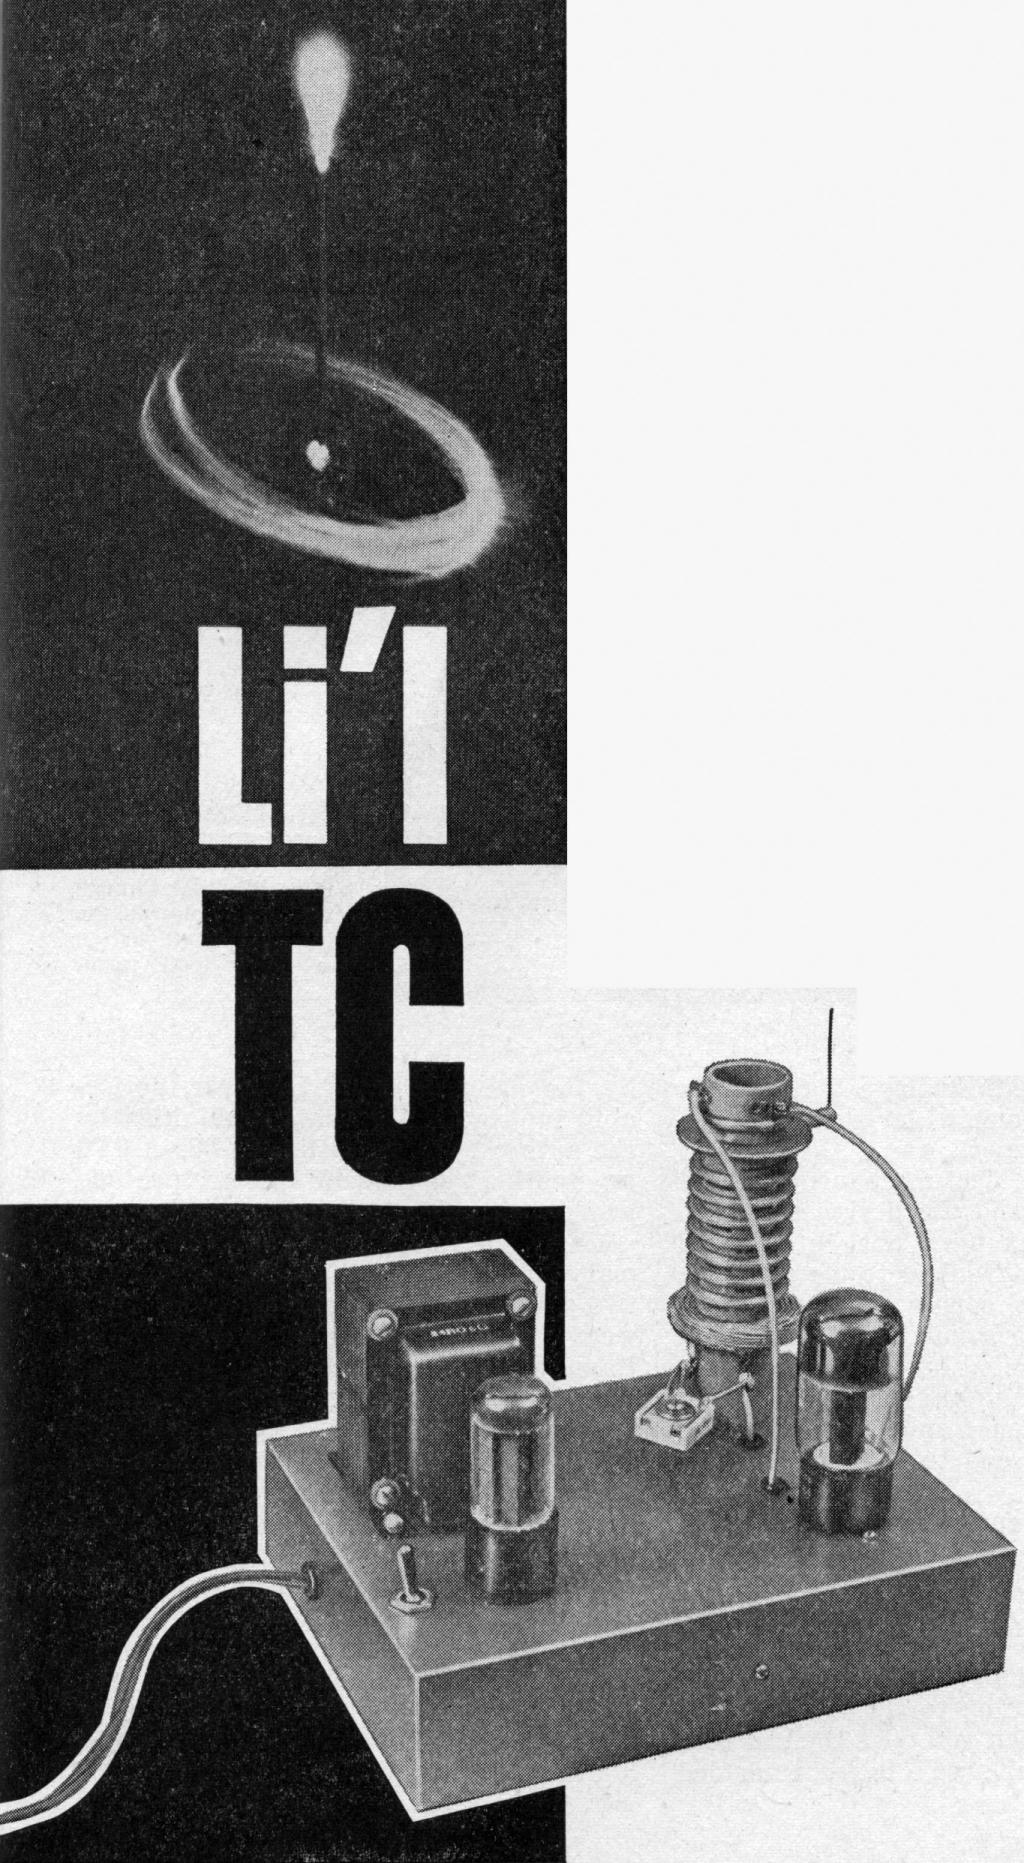 Li'l TC - Image 1